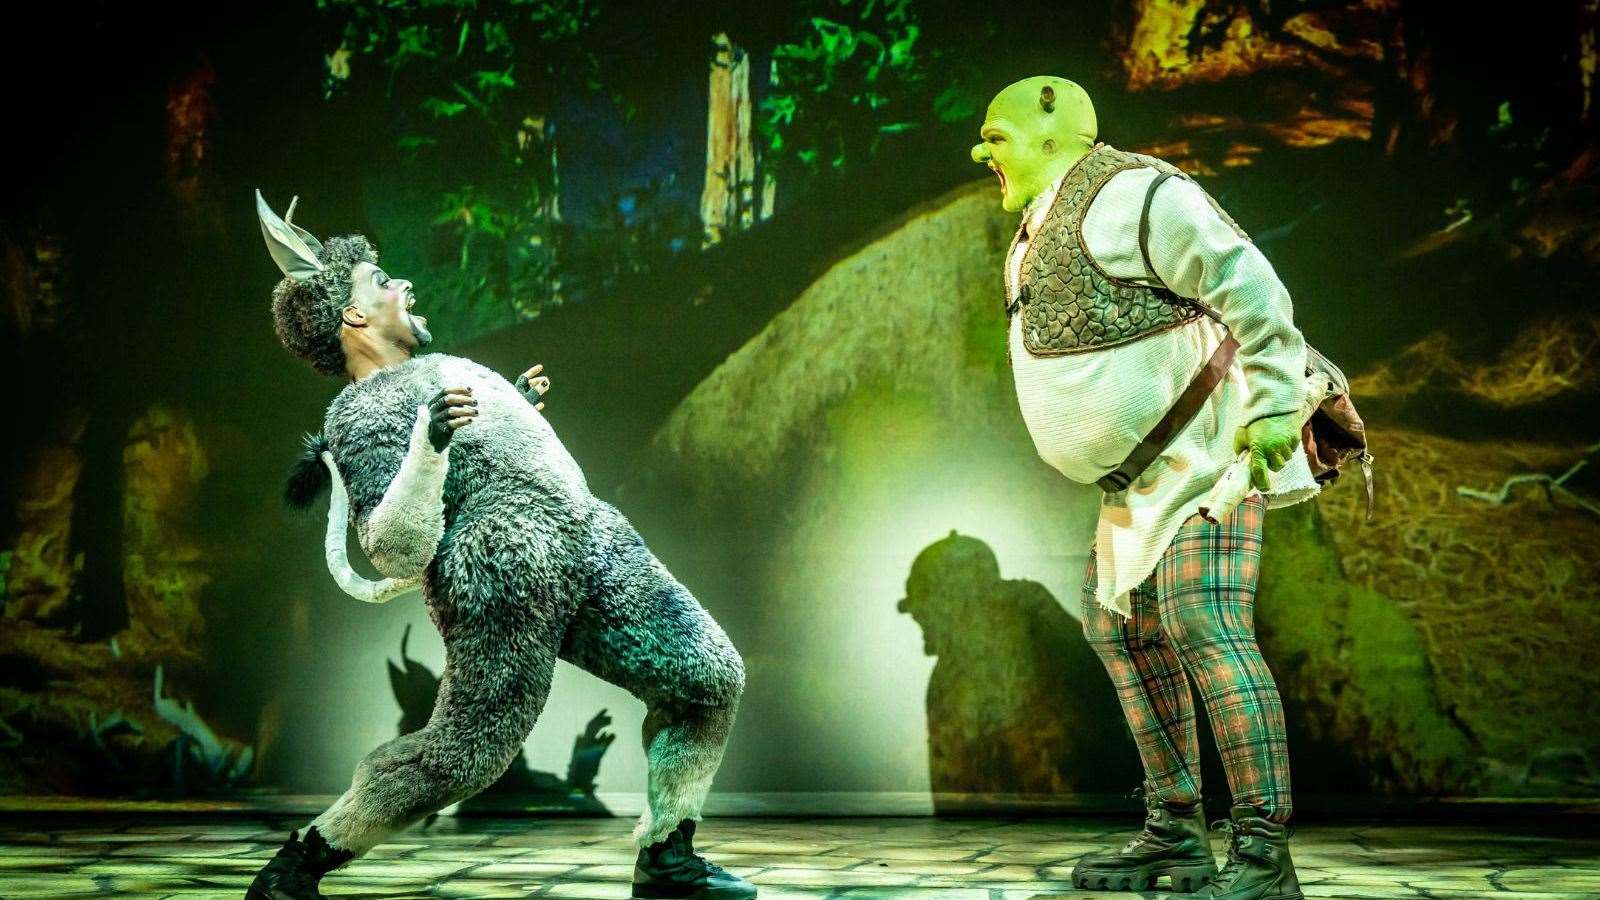 Shrek and Donkey in Shrek The Musical